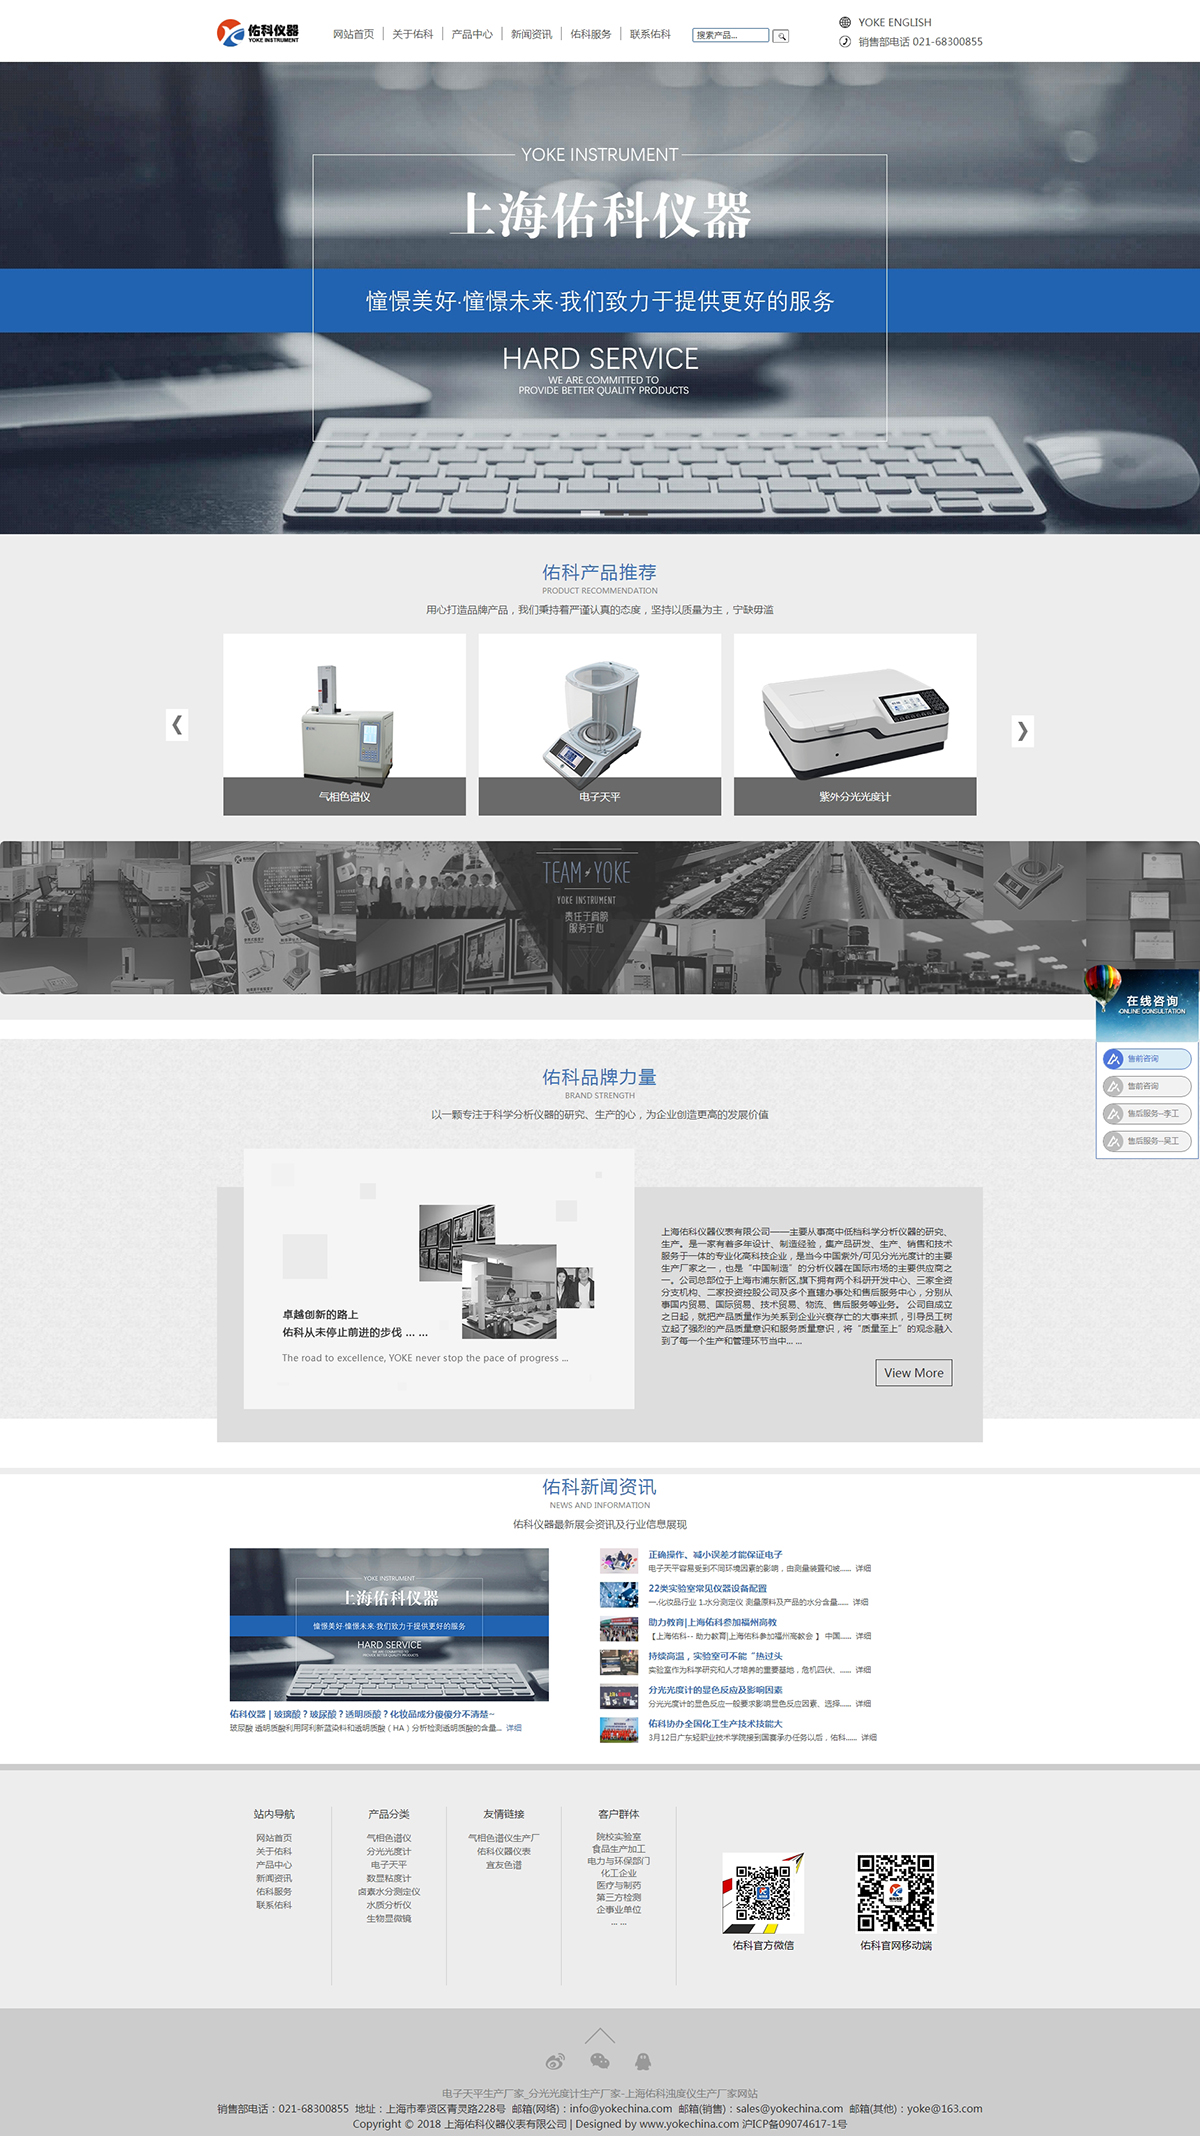 上海佑科仪器仪表有限公司网站制作案例